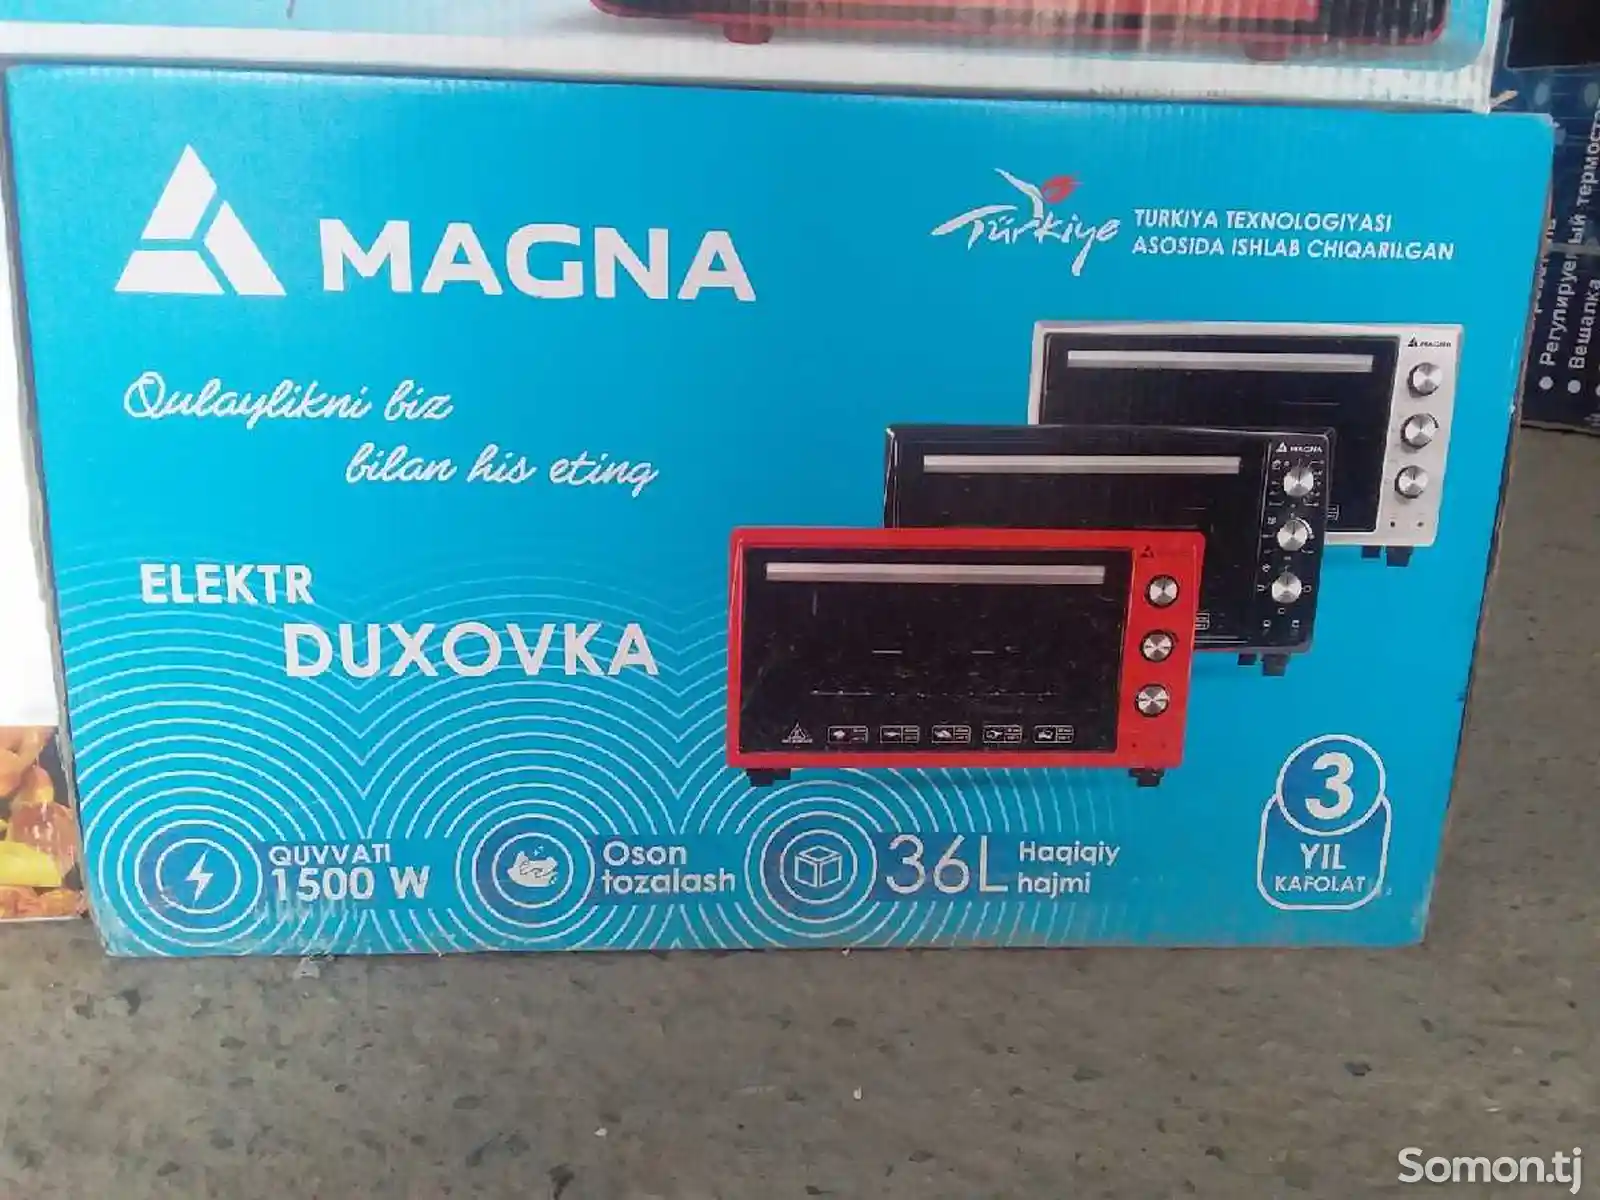 Духовка Magna-2